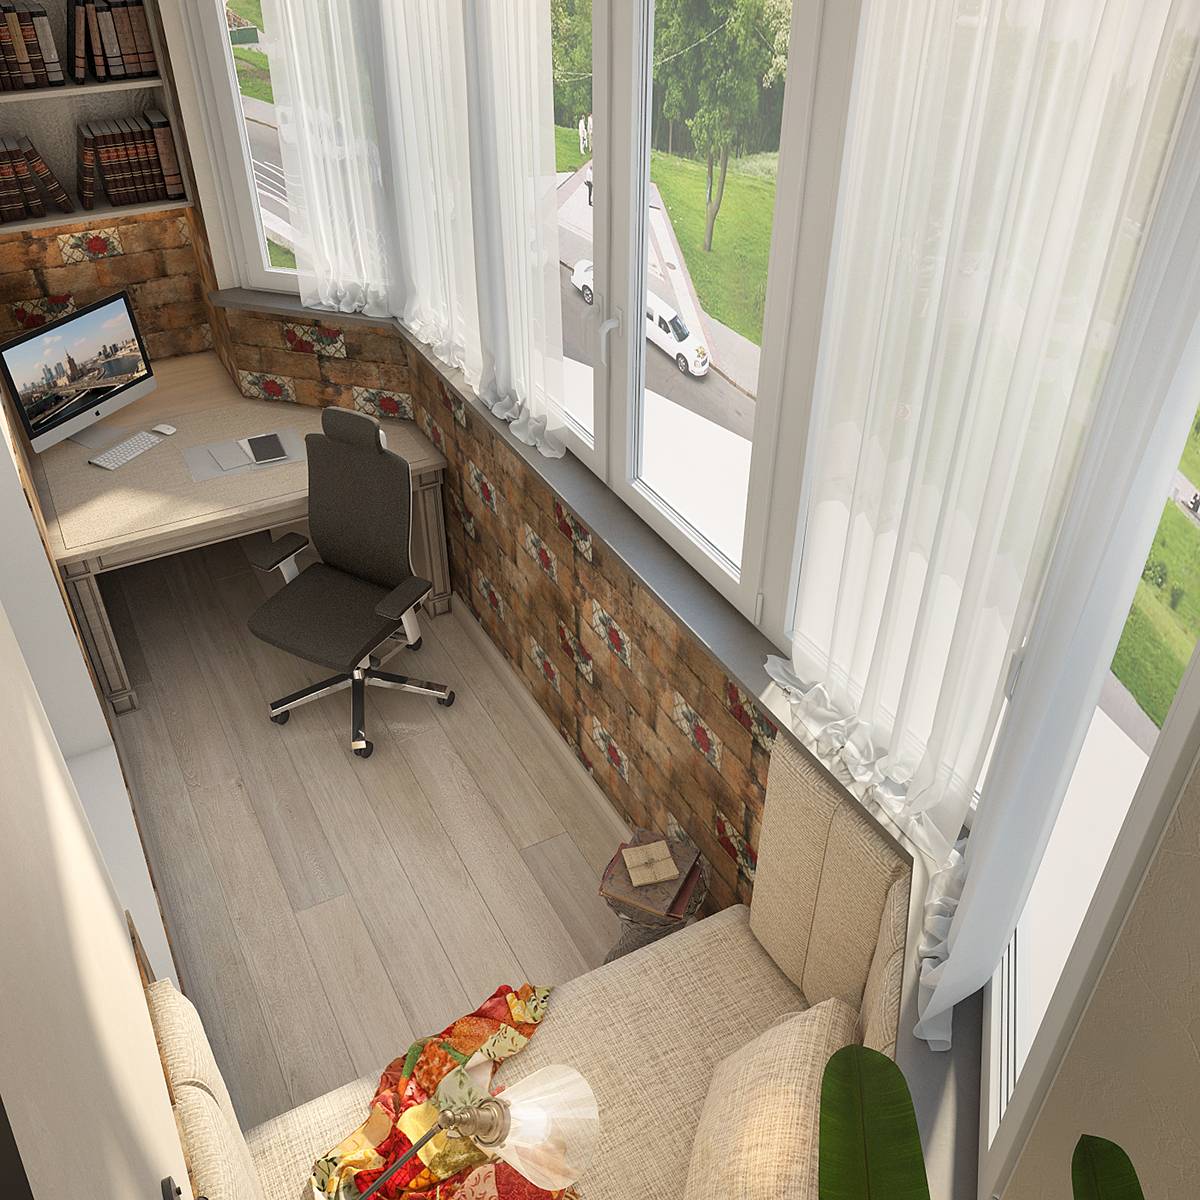 Дизайн комнаты совмещенной с балконом фото идеи